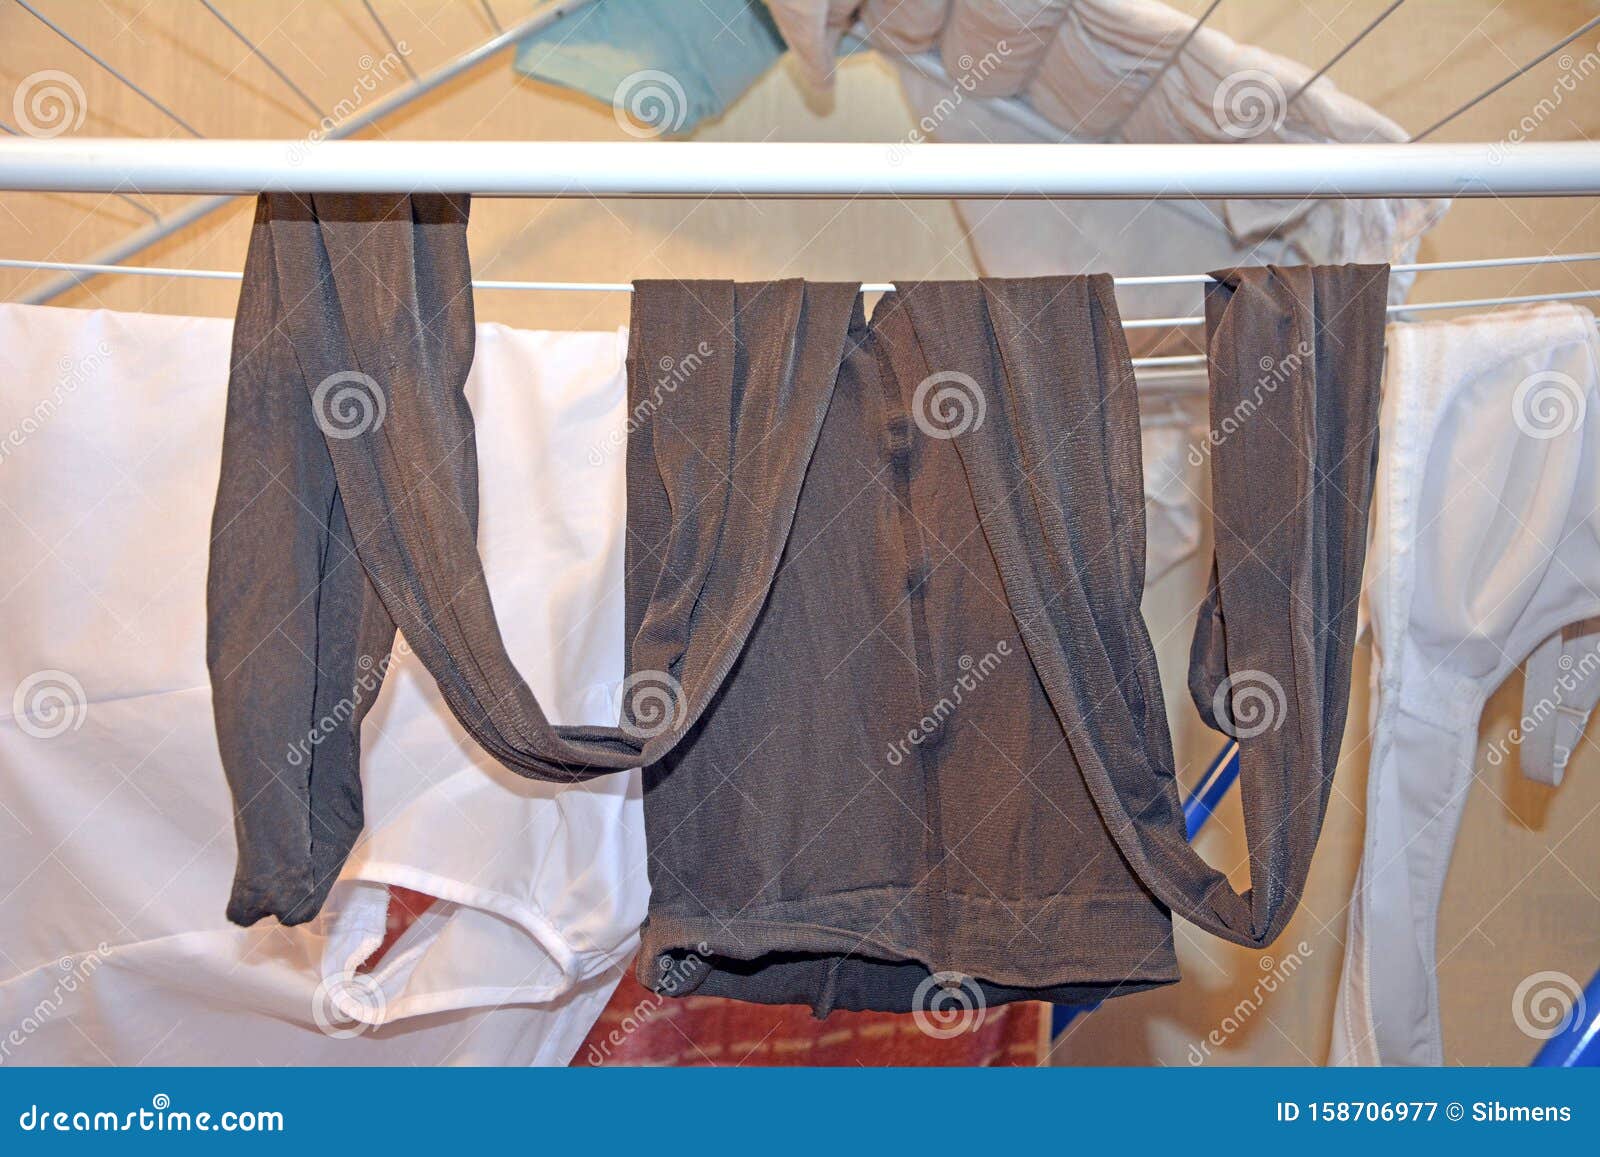 Women`s Used Nylon Pantyhose after Washing. Fetish. Stock Image